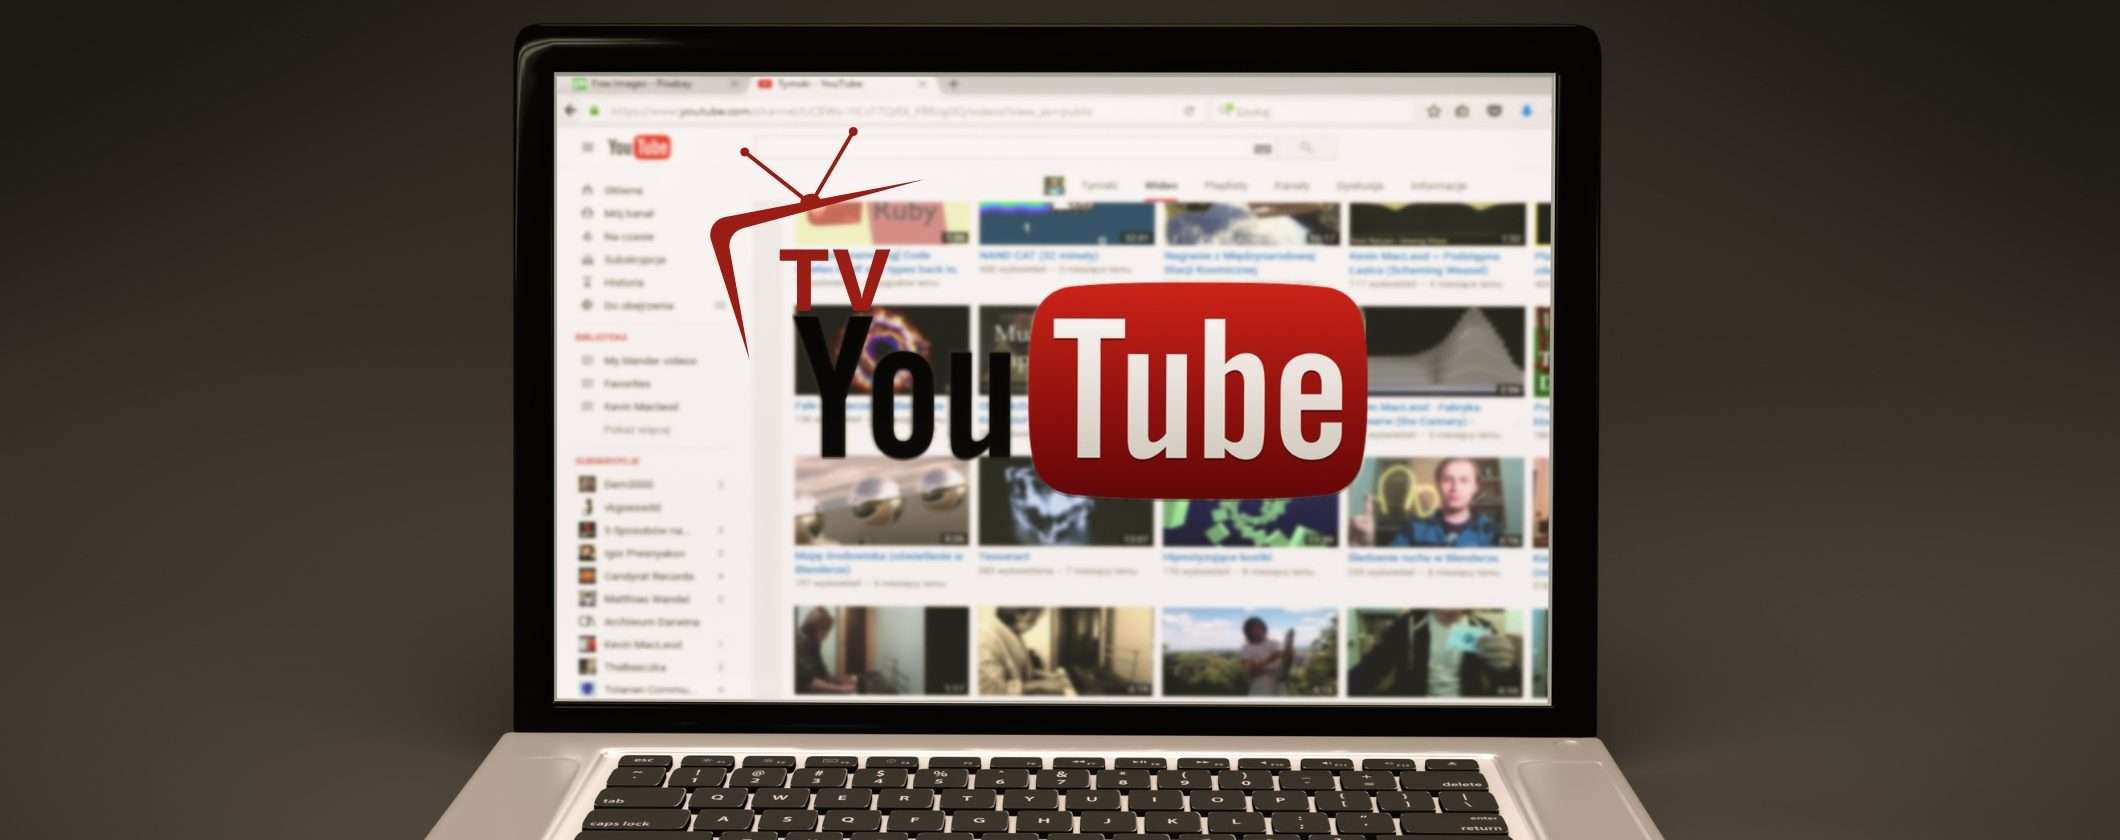 YouTube sfida il DVB-T2: pronto a lanciare canali TV gratuiti